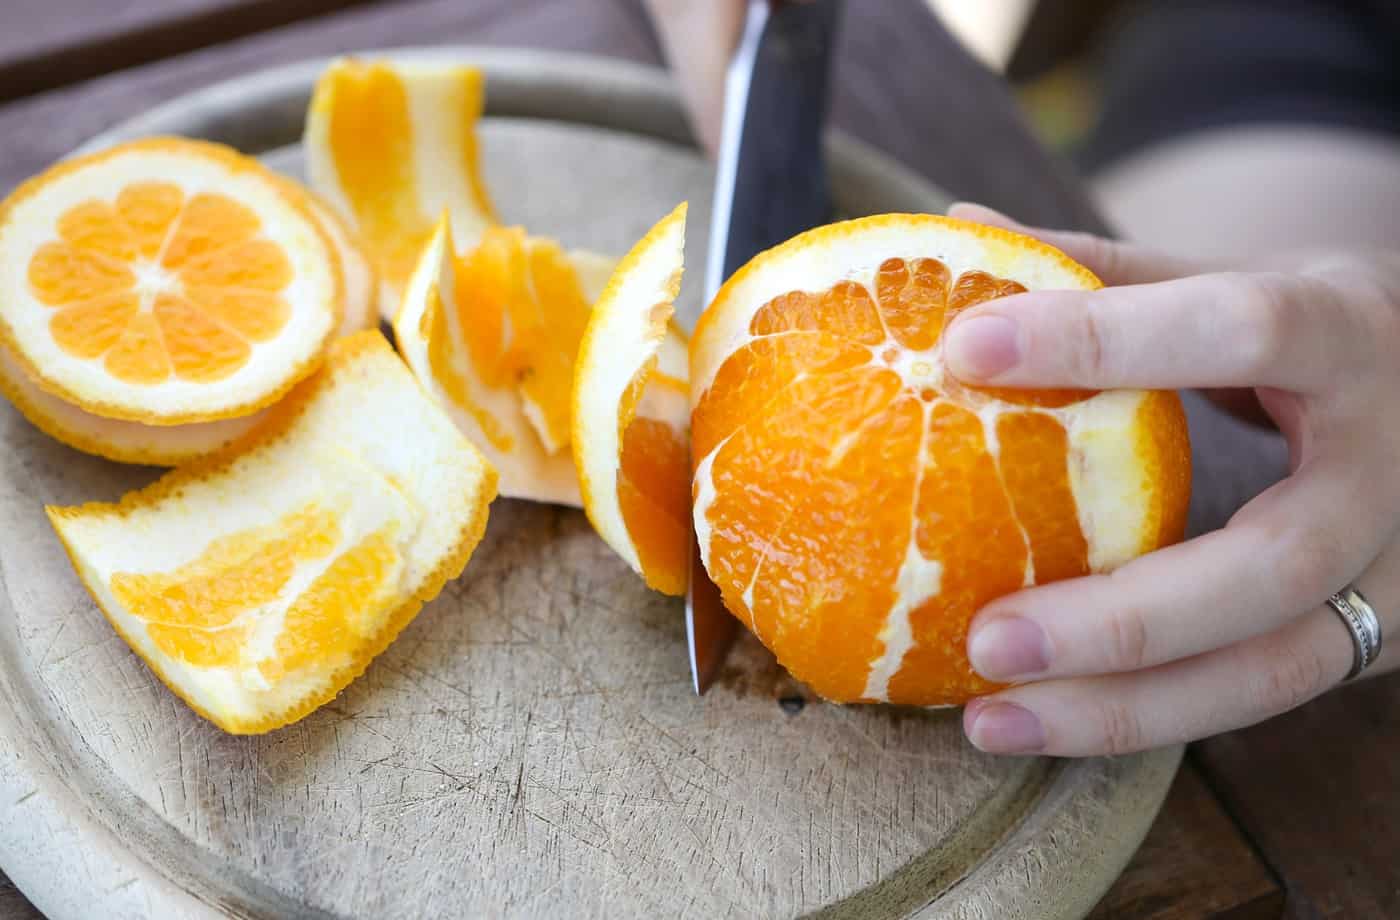 فوائد قشر البرتقال للبشرة